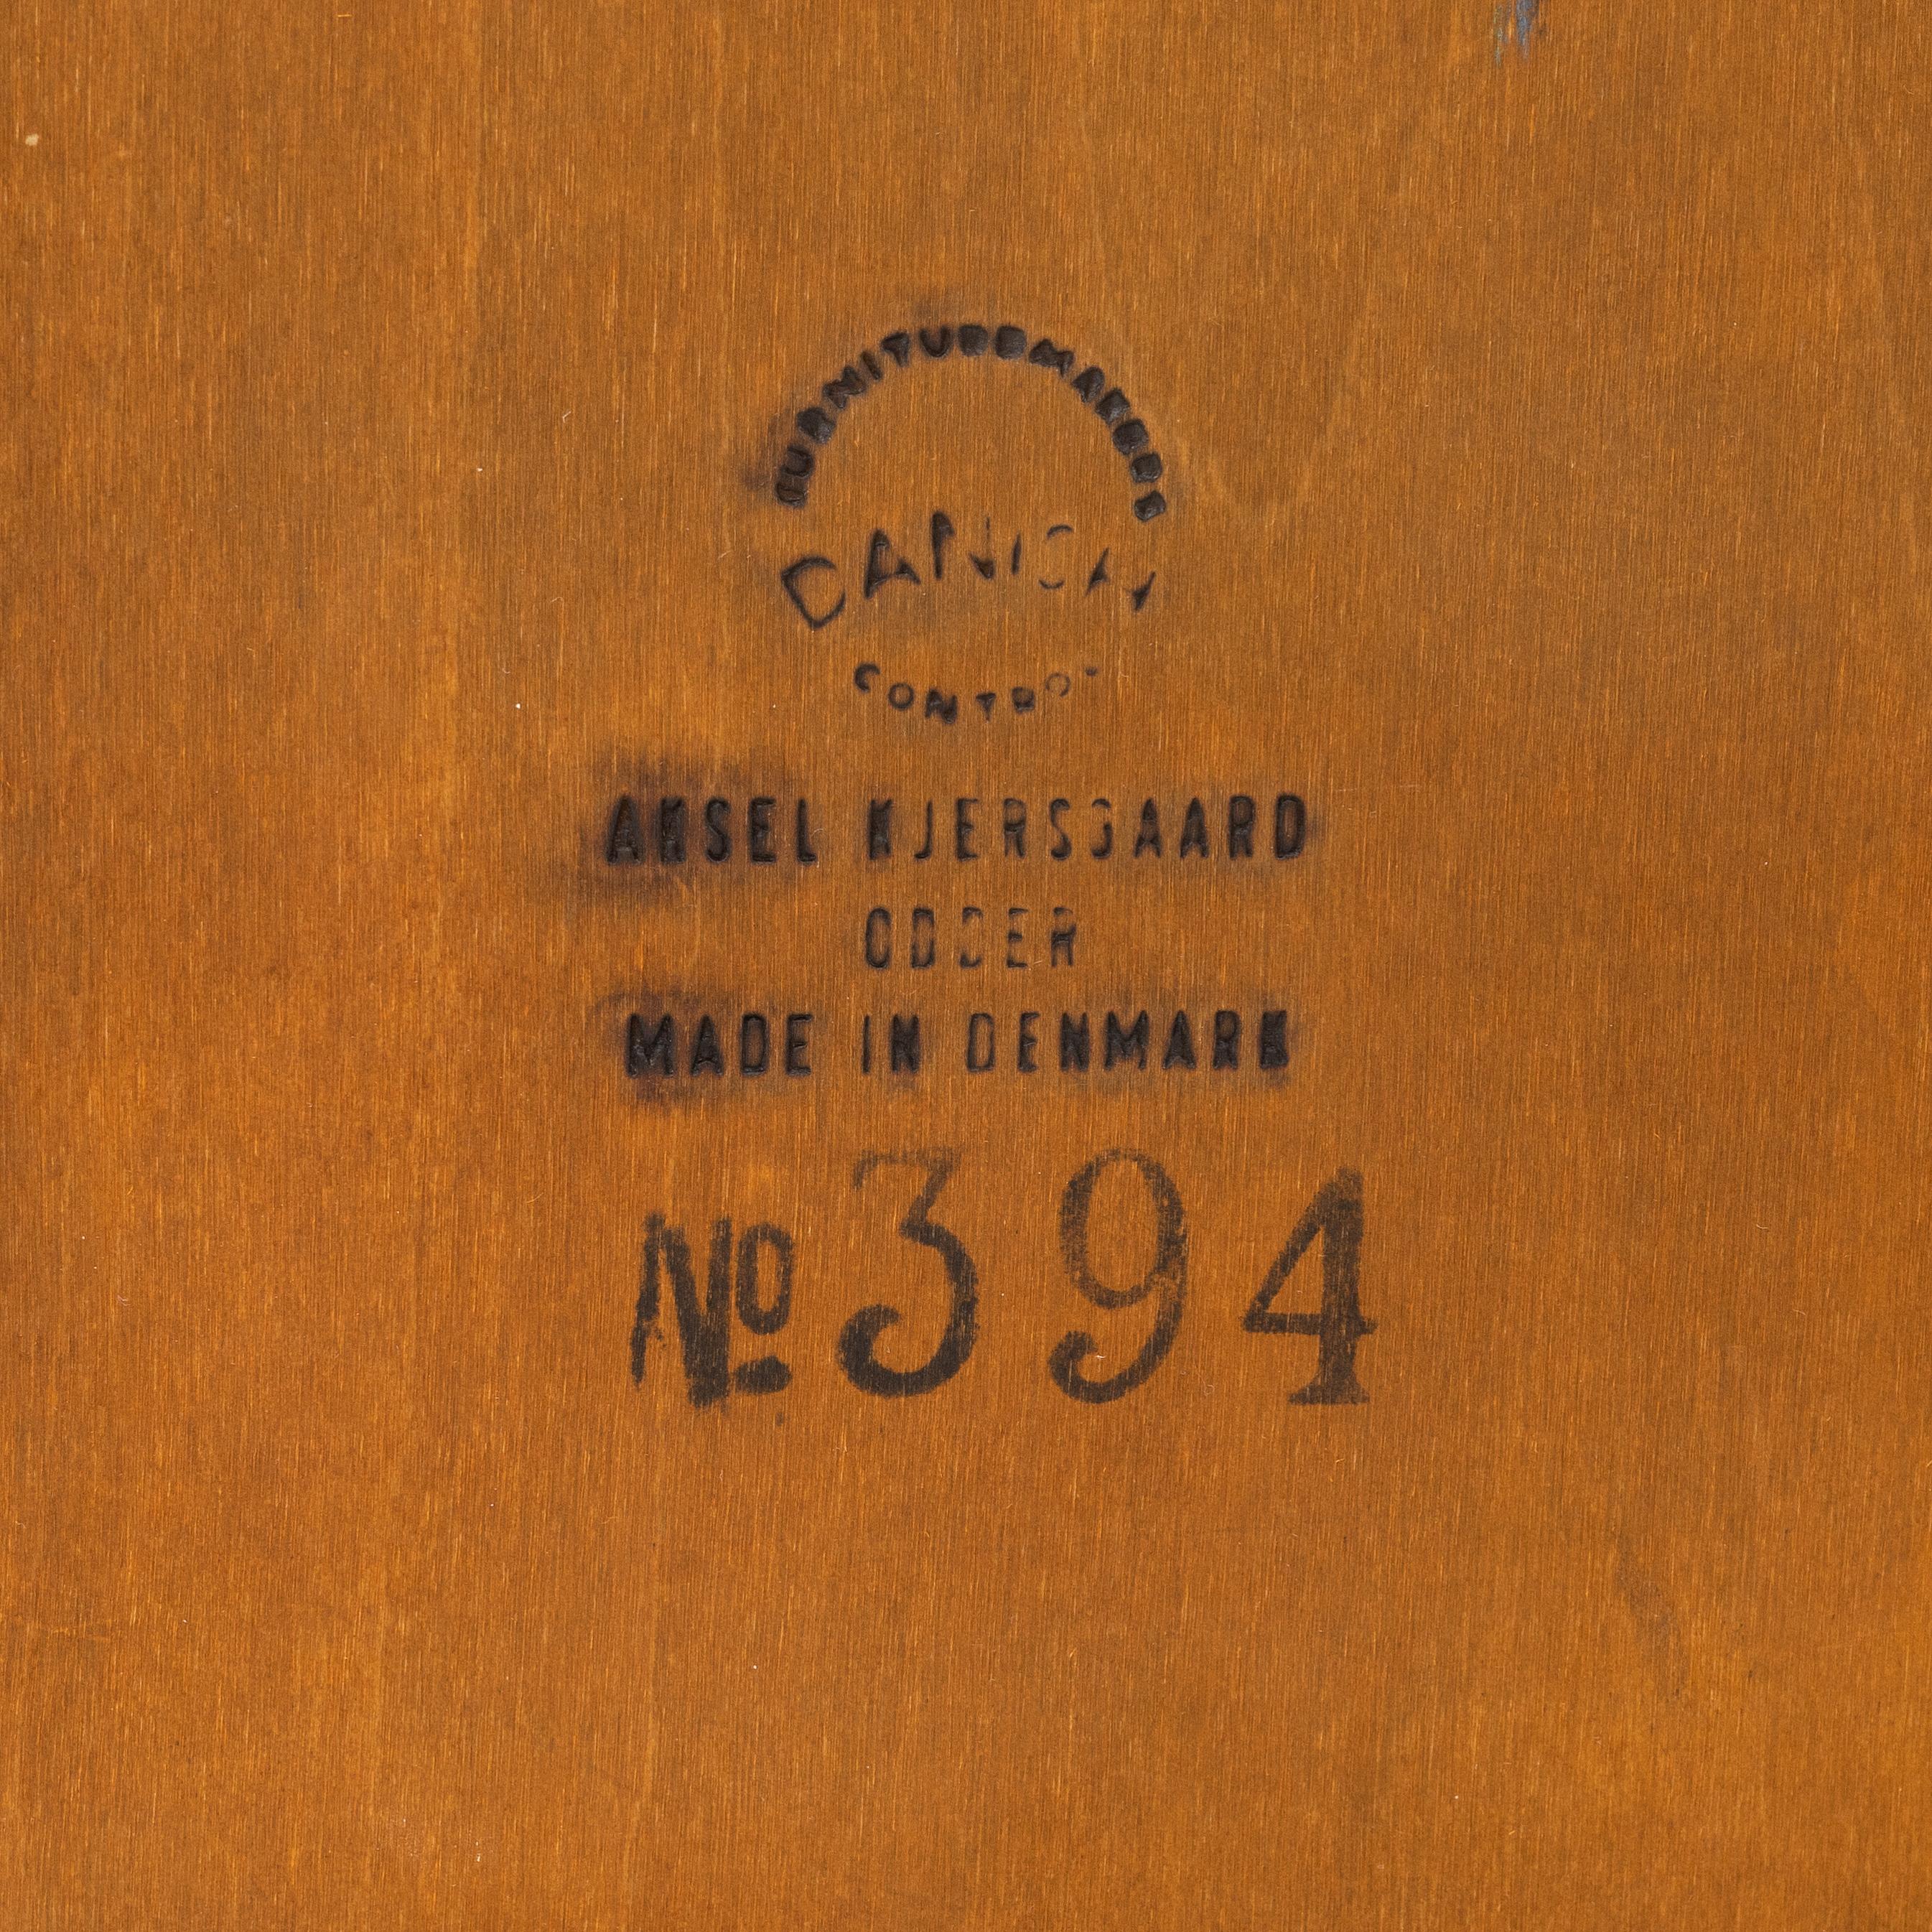 Kai Kristiansen (Danemark. Né en 1929)
Commode basse à 4 tiroirs en bois de rose, produite par Aksel Kjersgaard à Odder, Danemark, vers 1960. Les poignées de tiroirs circulaires de Kristiansen sont caractéristiques.   Mesures : H 52 cm  L 118 cm  D